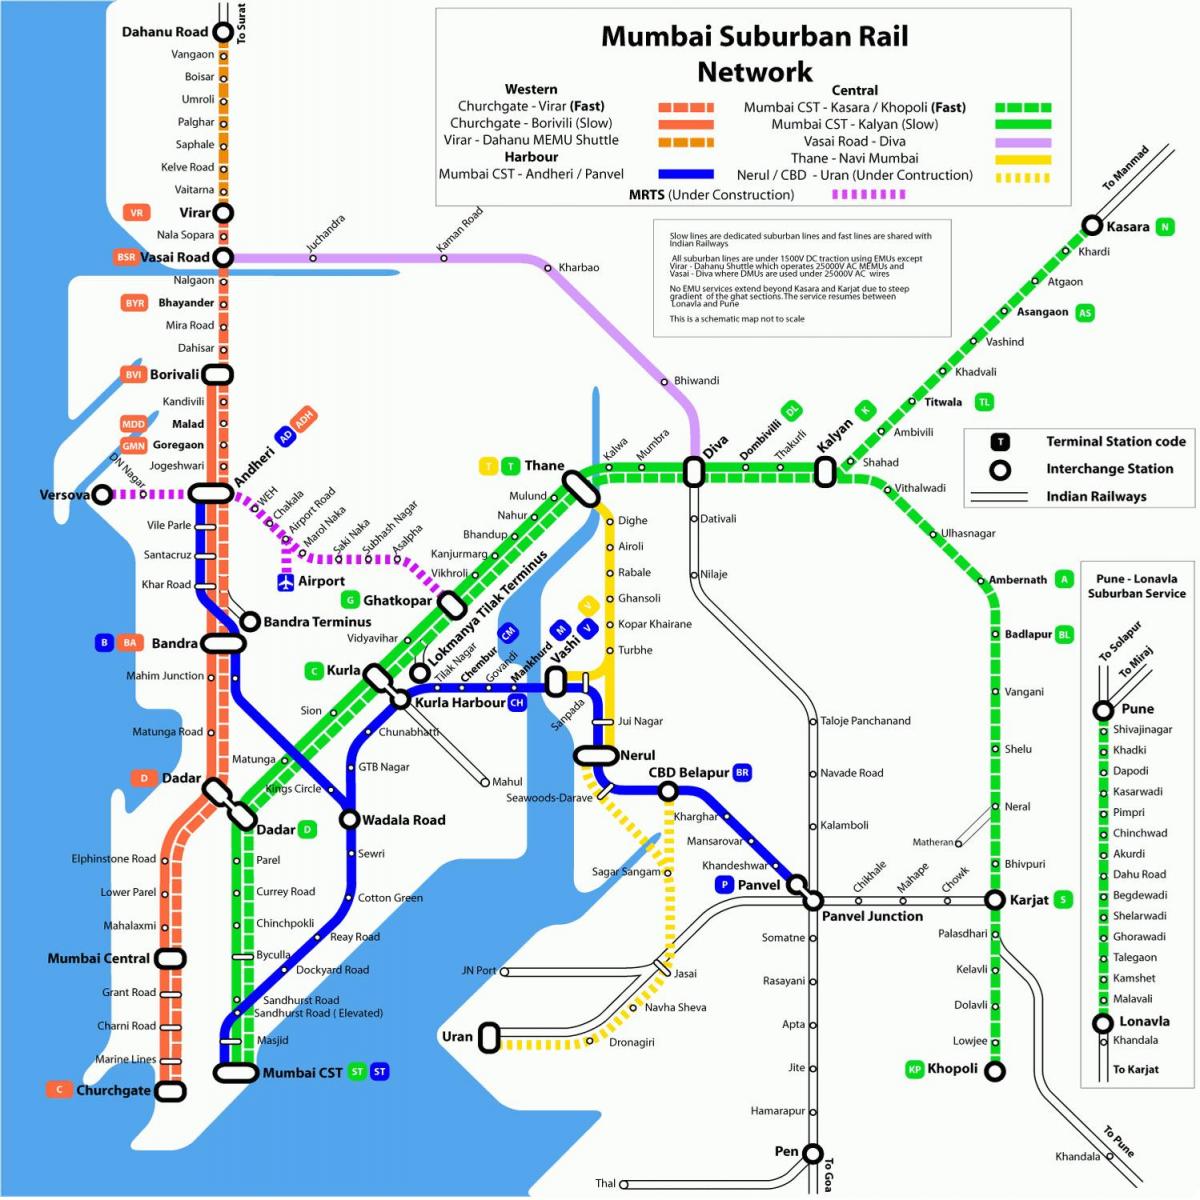 Mumbajus metro traukinių žemėlapis